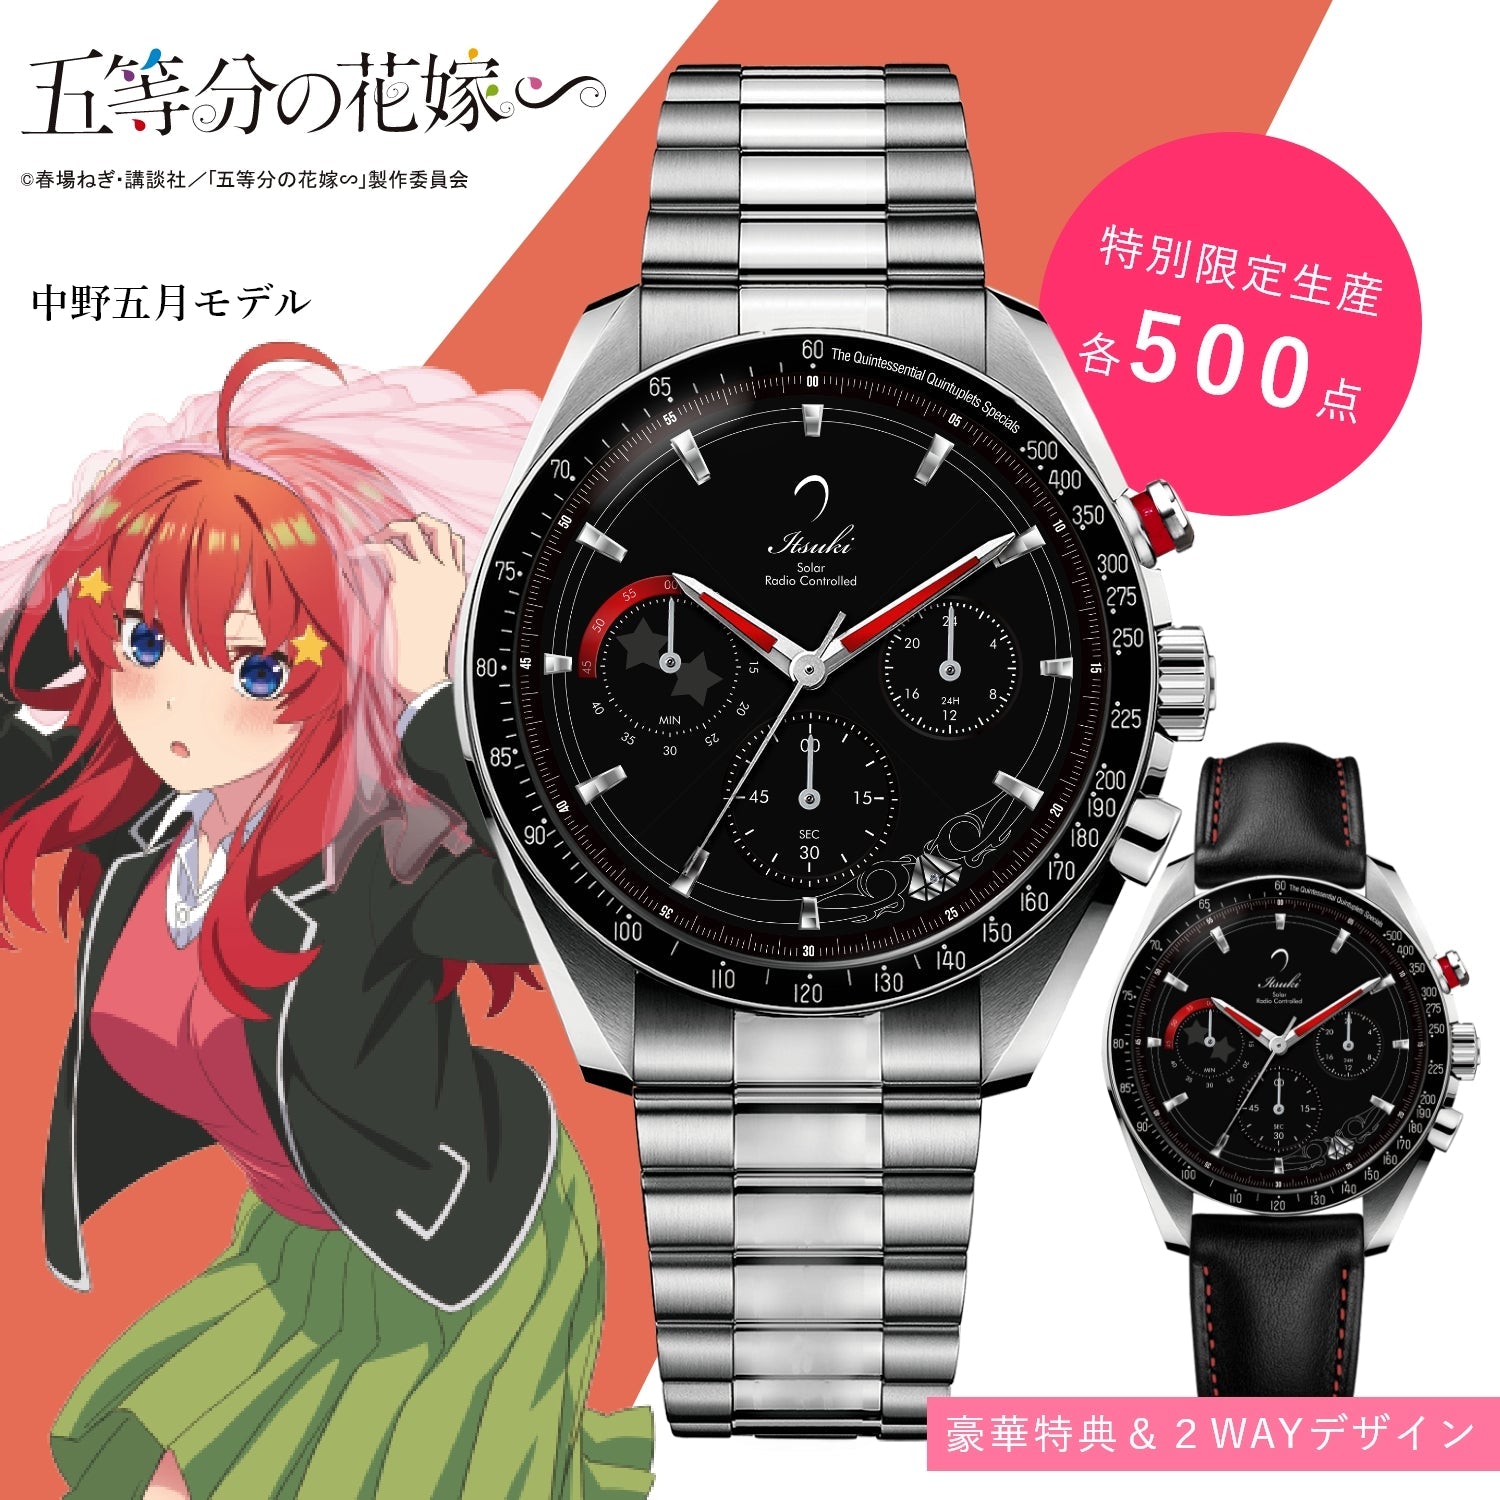 「五等分の花嫁∽」電波ソーラークロノグラフ腕時計| 中野 五月 - 公式通販サイト「アニメコレクション/Anime Collection」